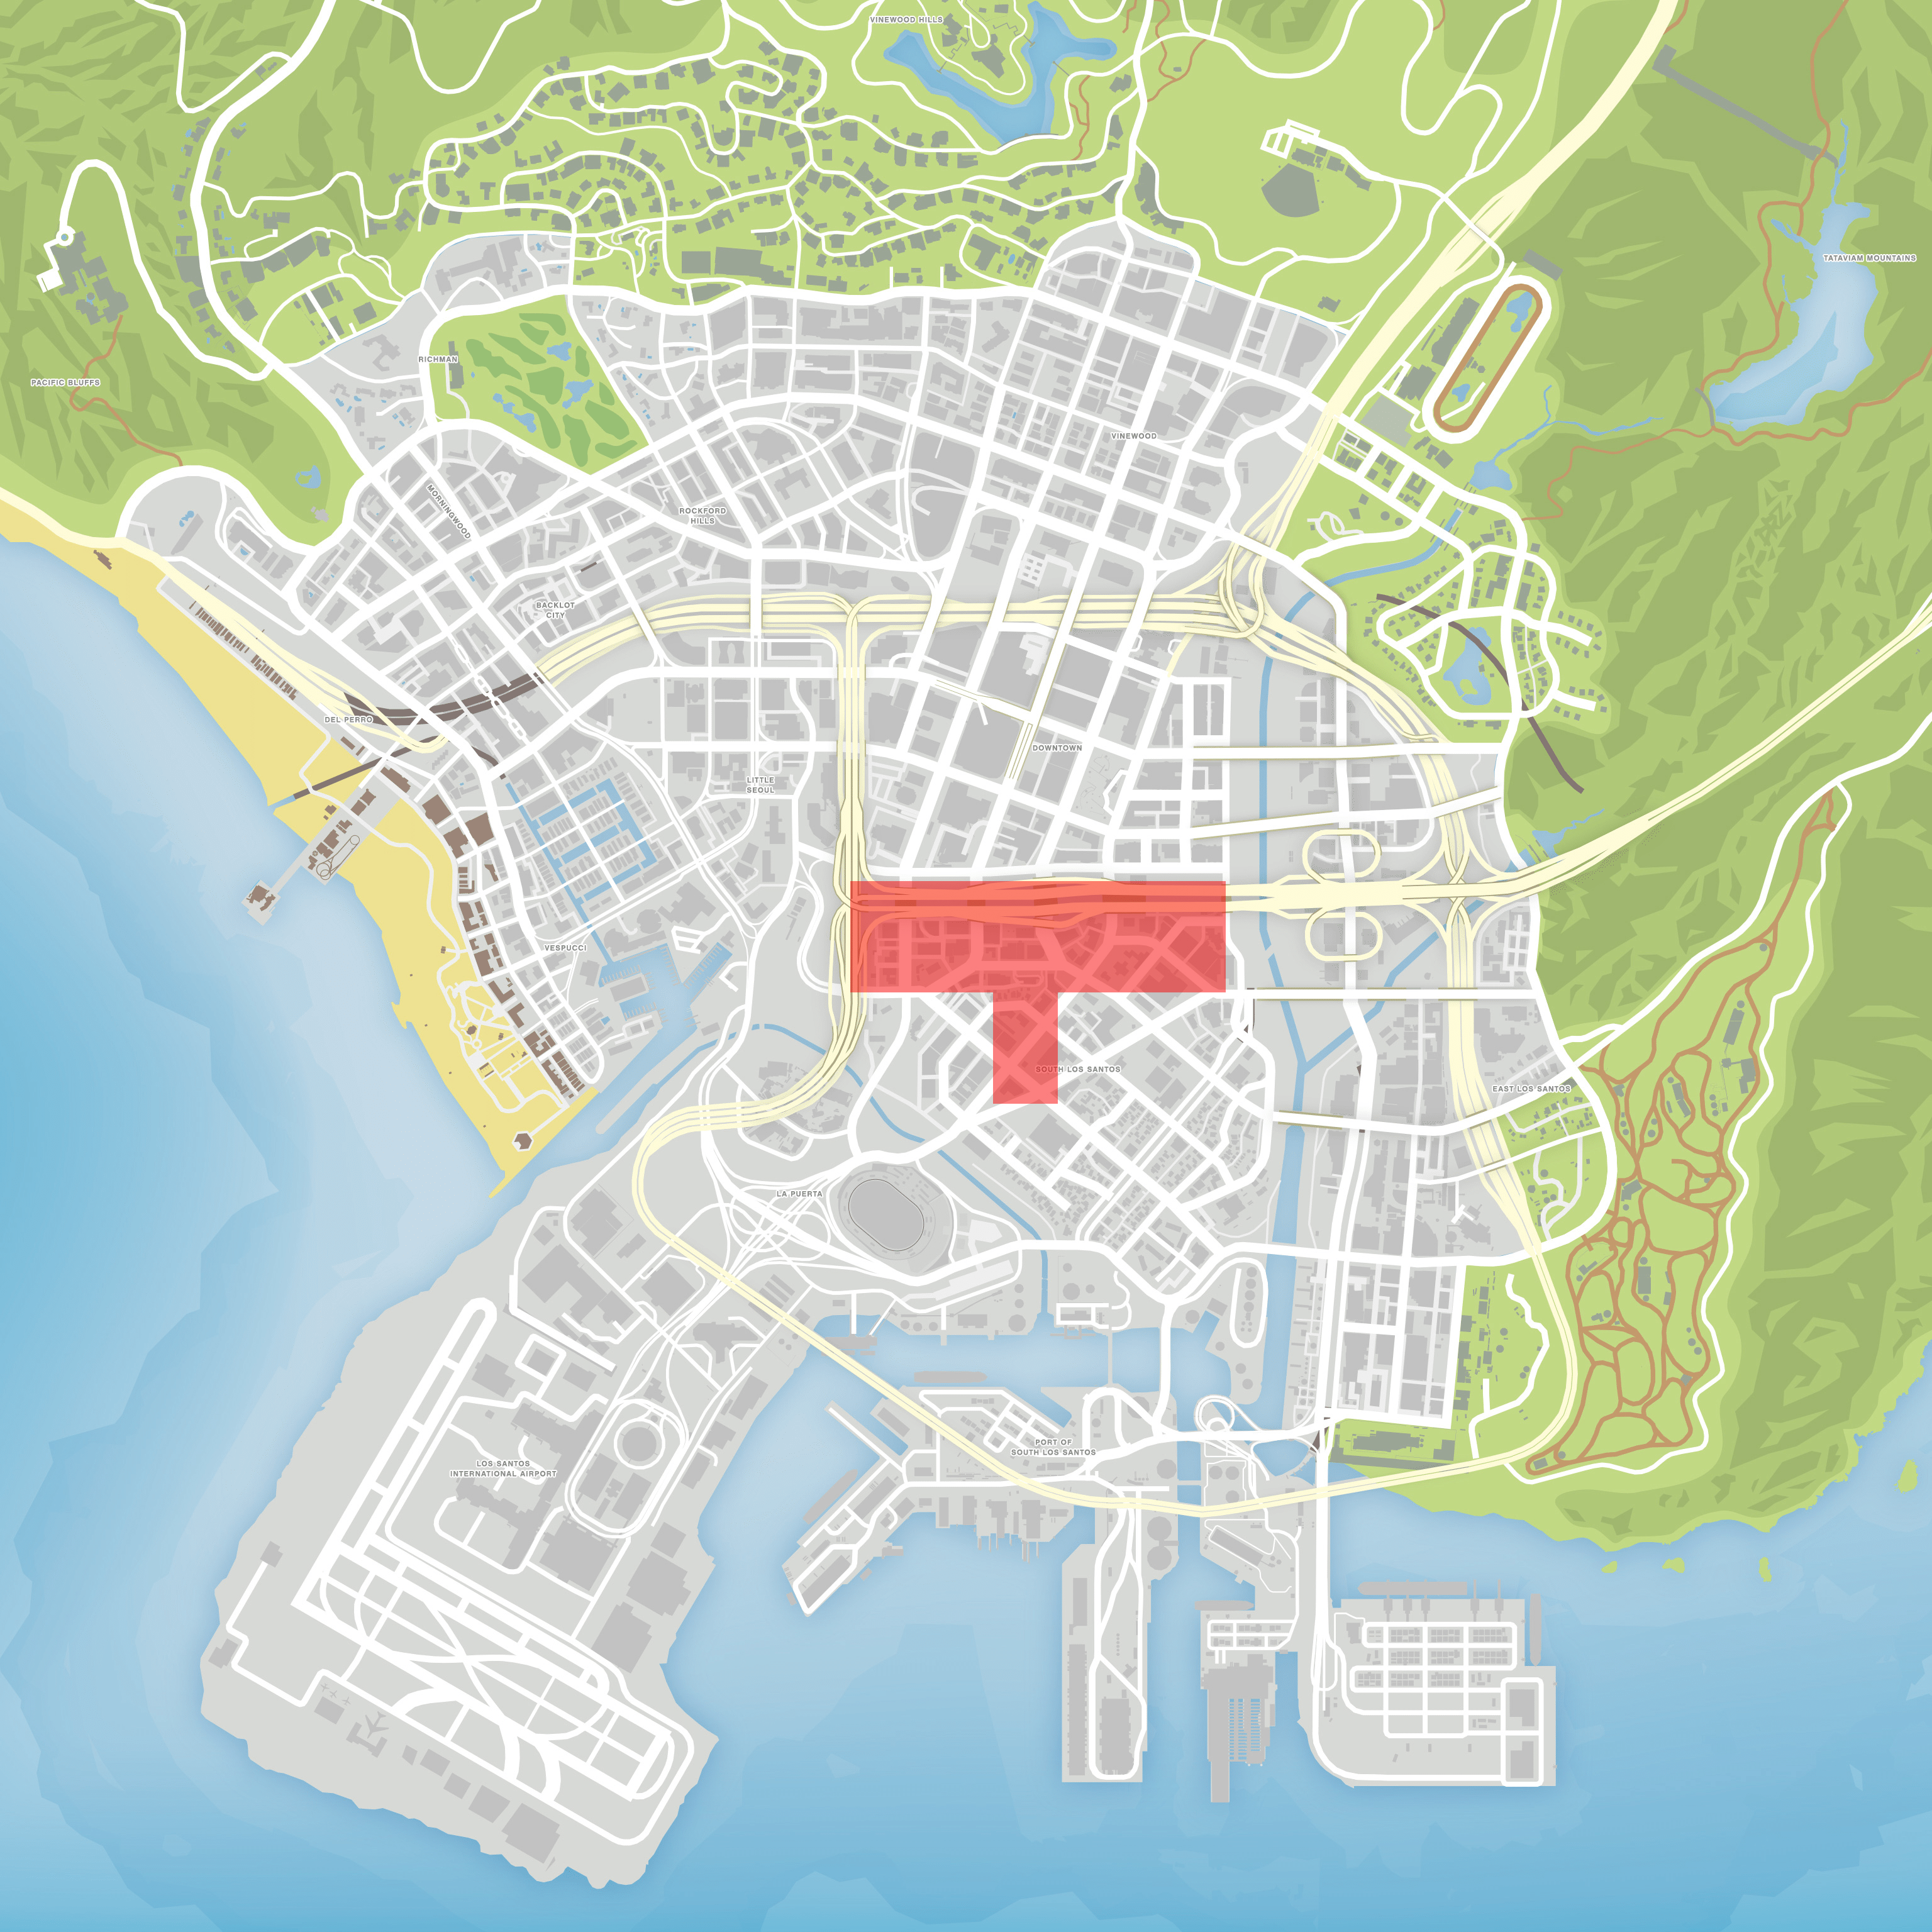 GTA 5 - Los Santos Customs Location Guide 